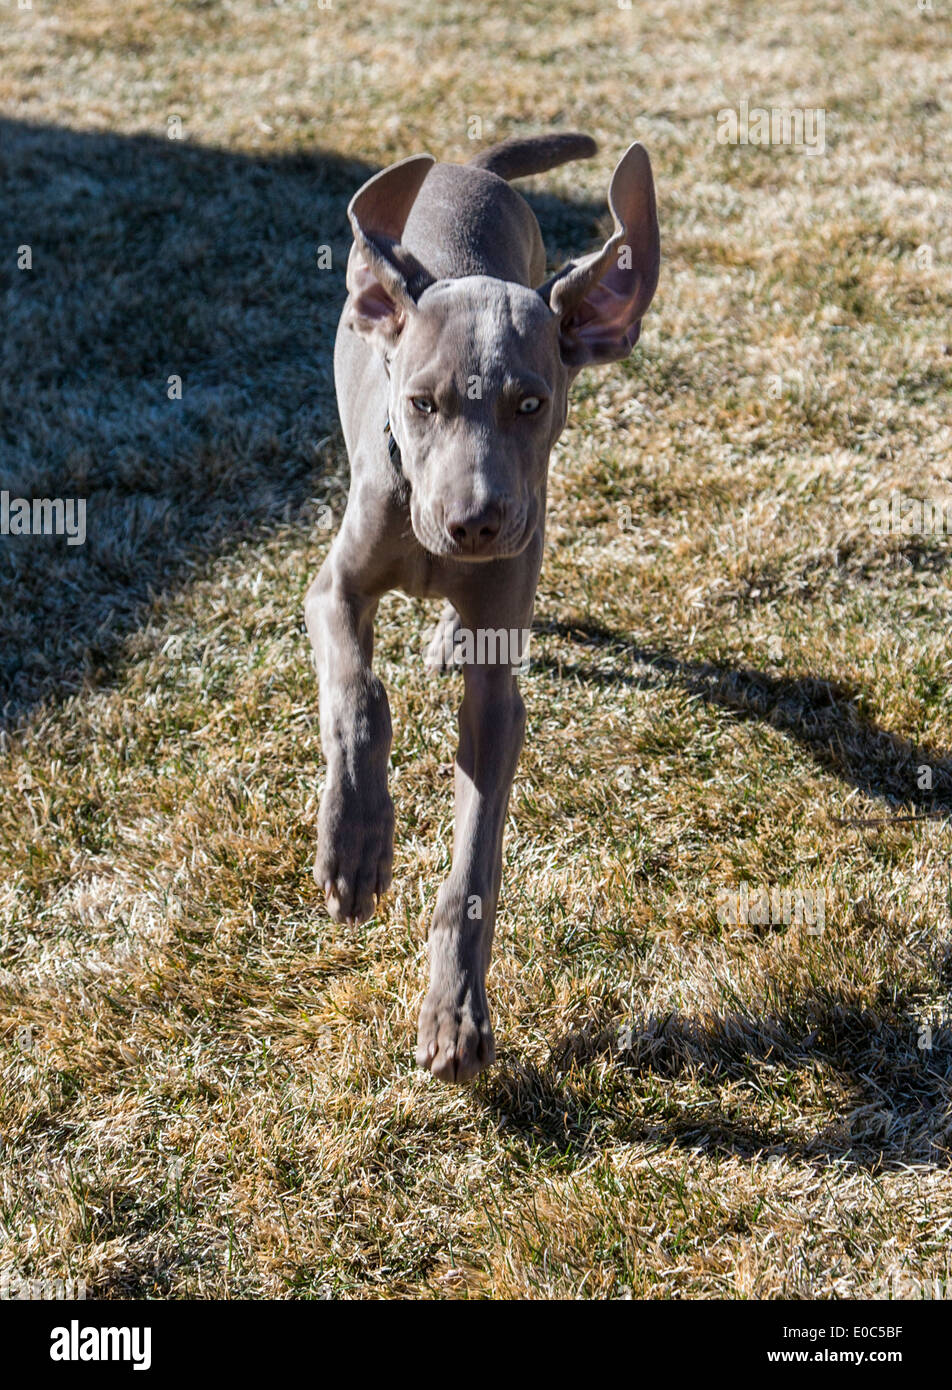 Weimaraner maschio cucciolo (14 settimane), tedesco allevati cane da caccia in esecuzione sull'erba Foto Stock